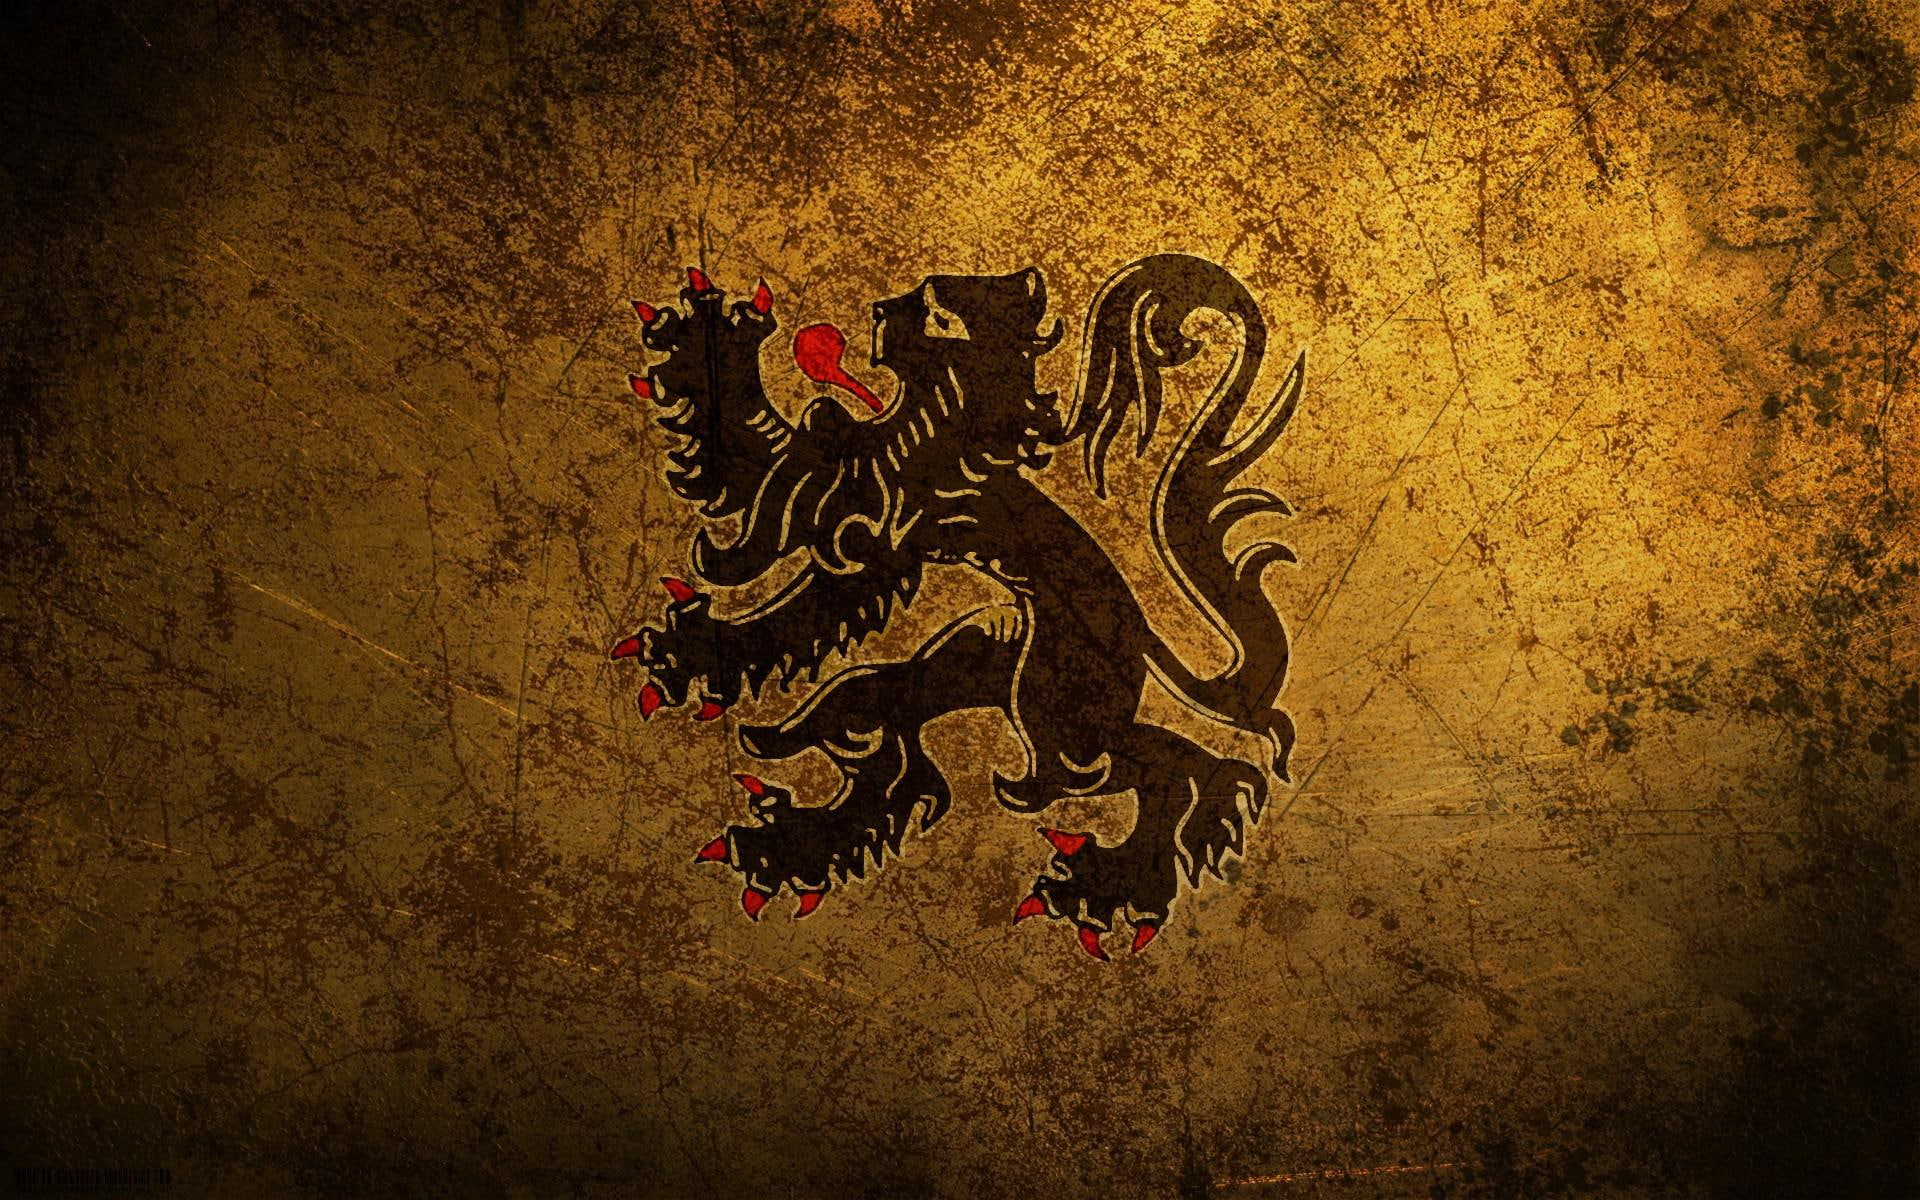 Flanders lion, black and red monster illustration, digital art